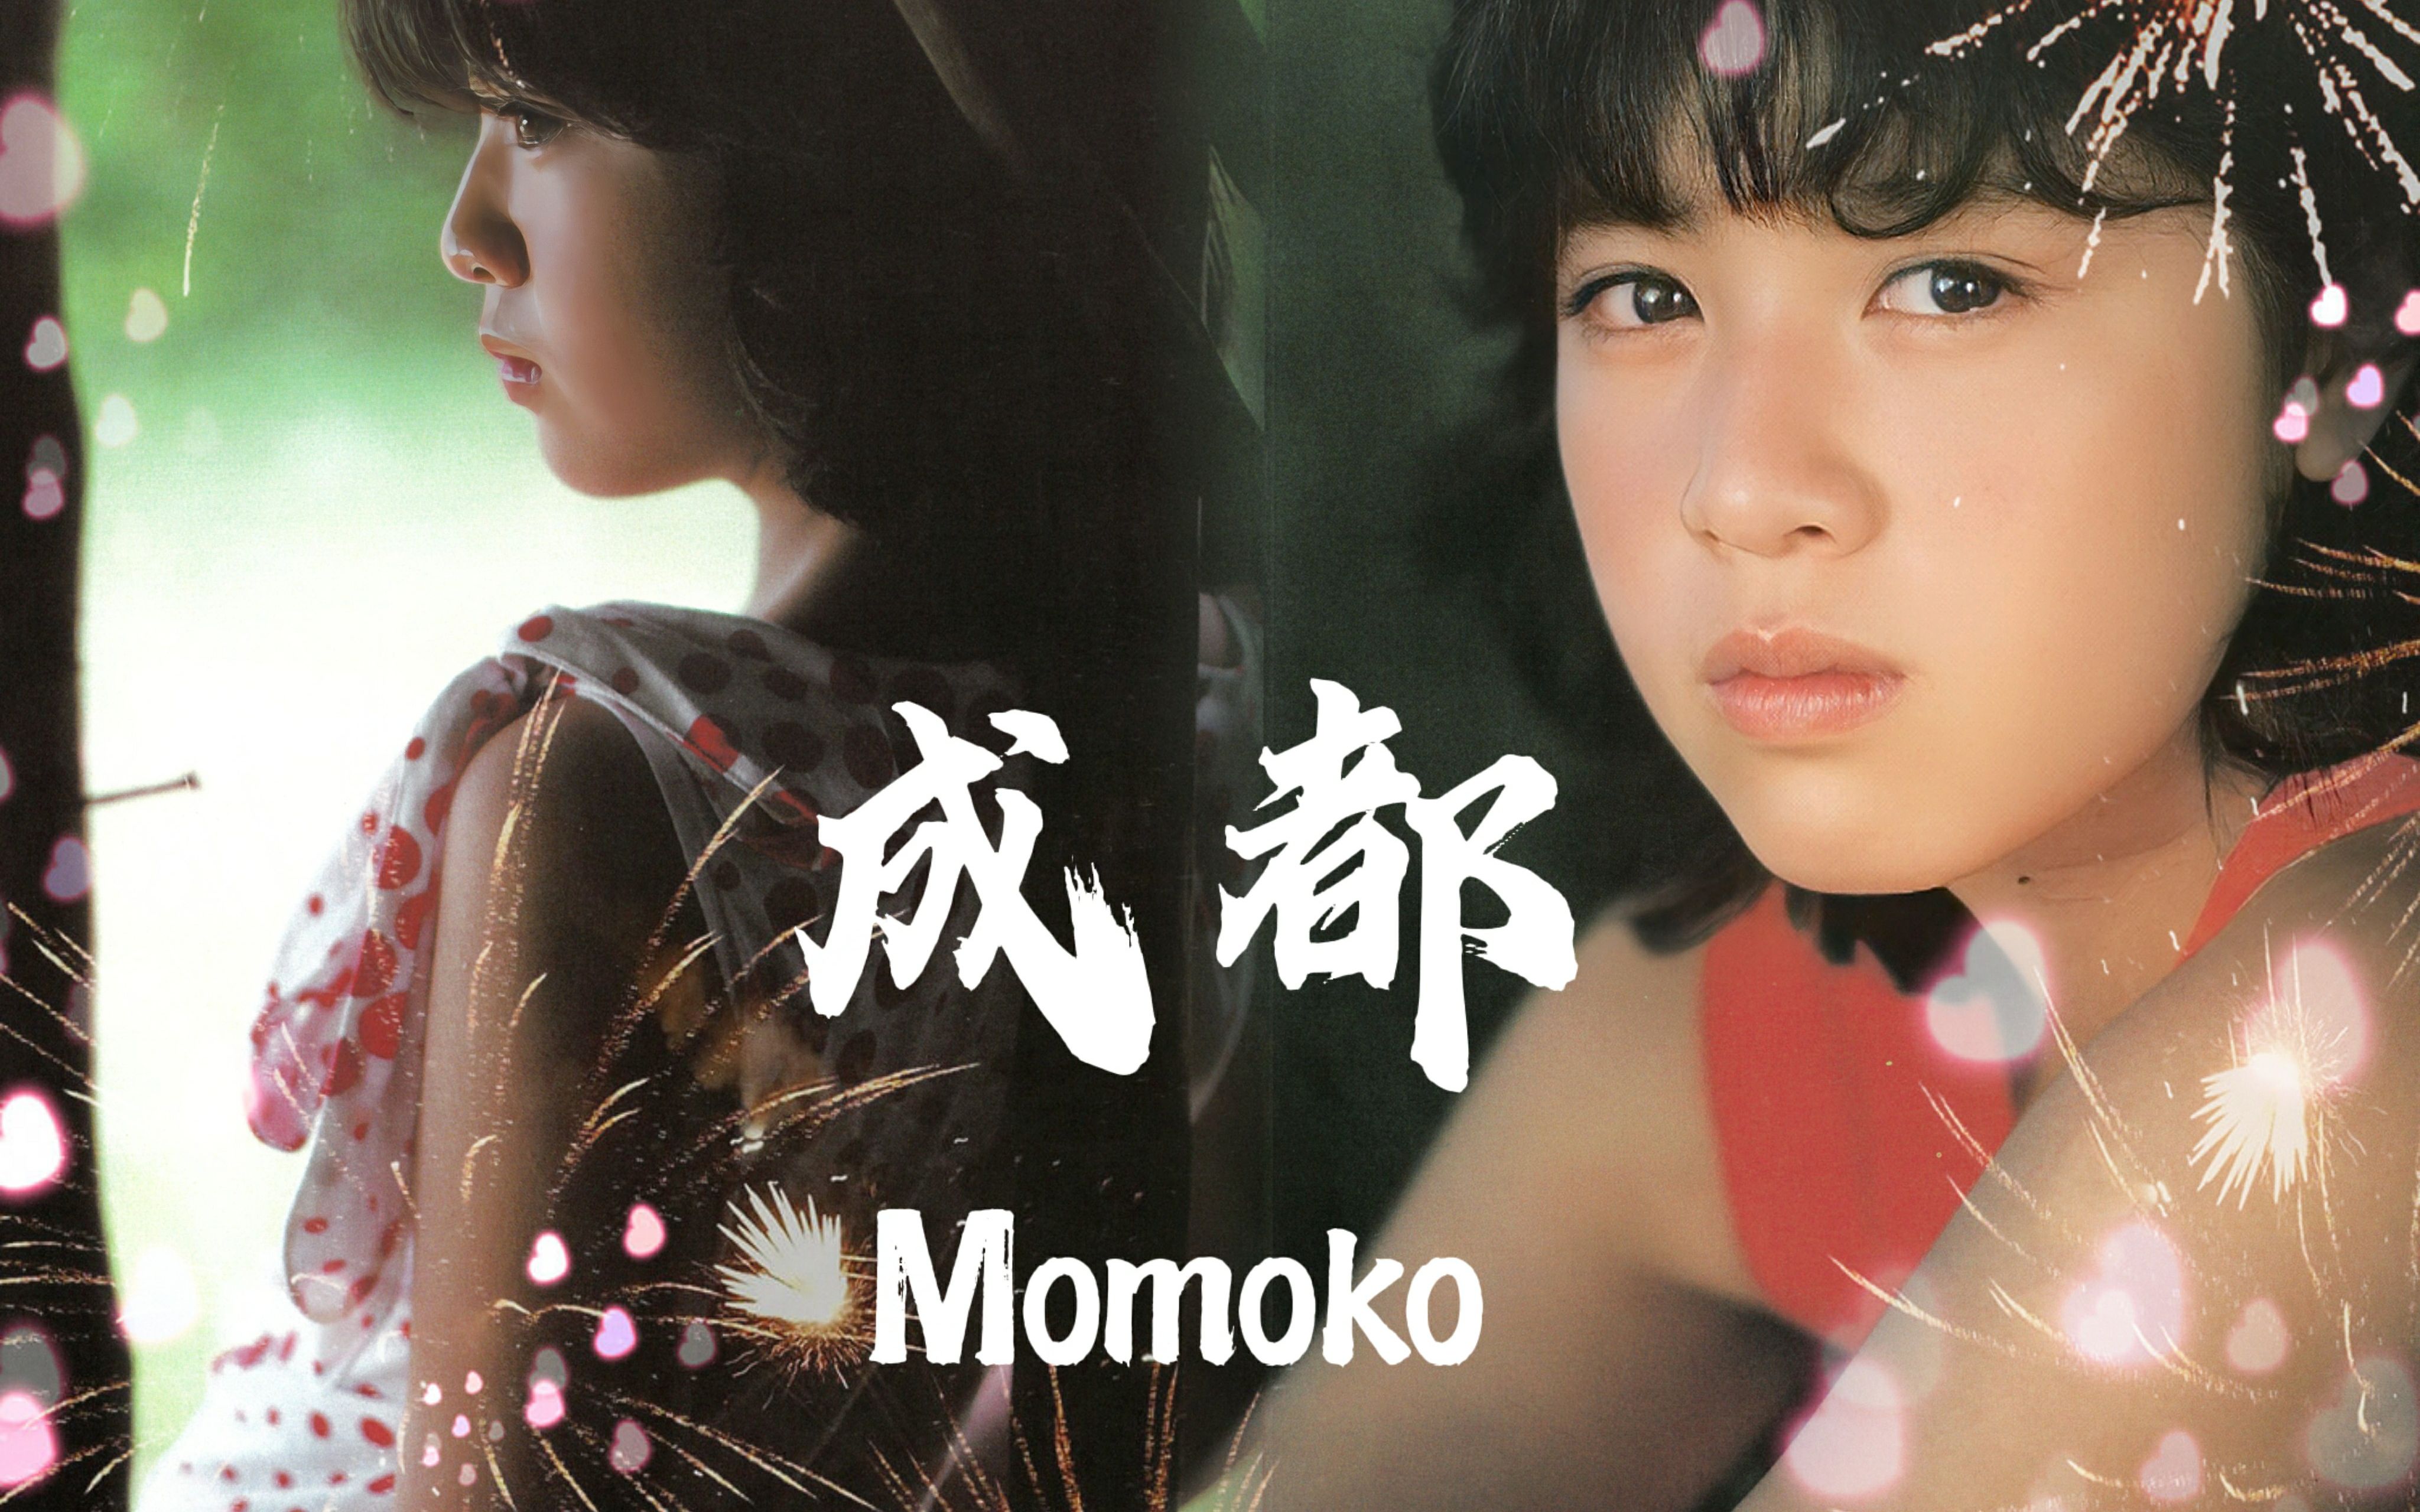 momokokikuchi图片